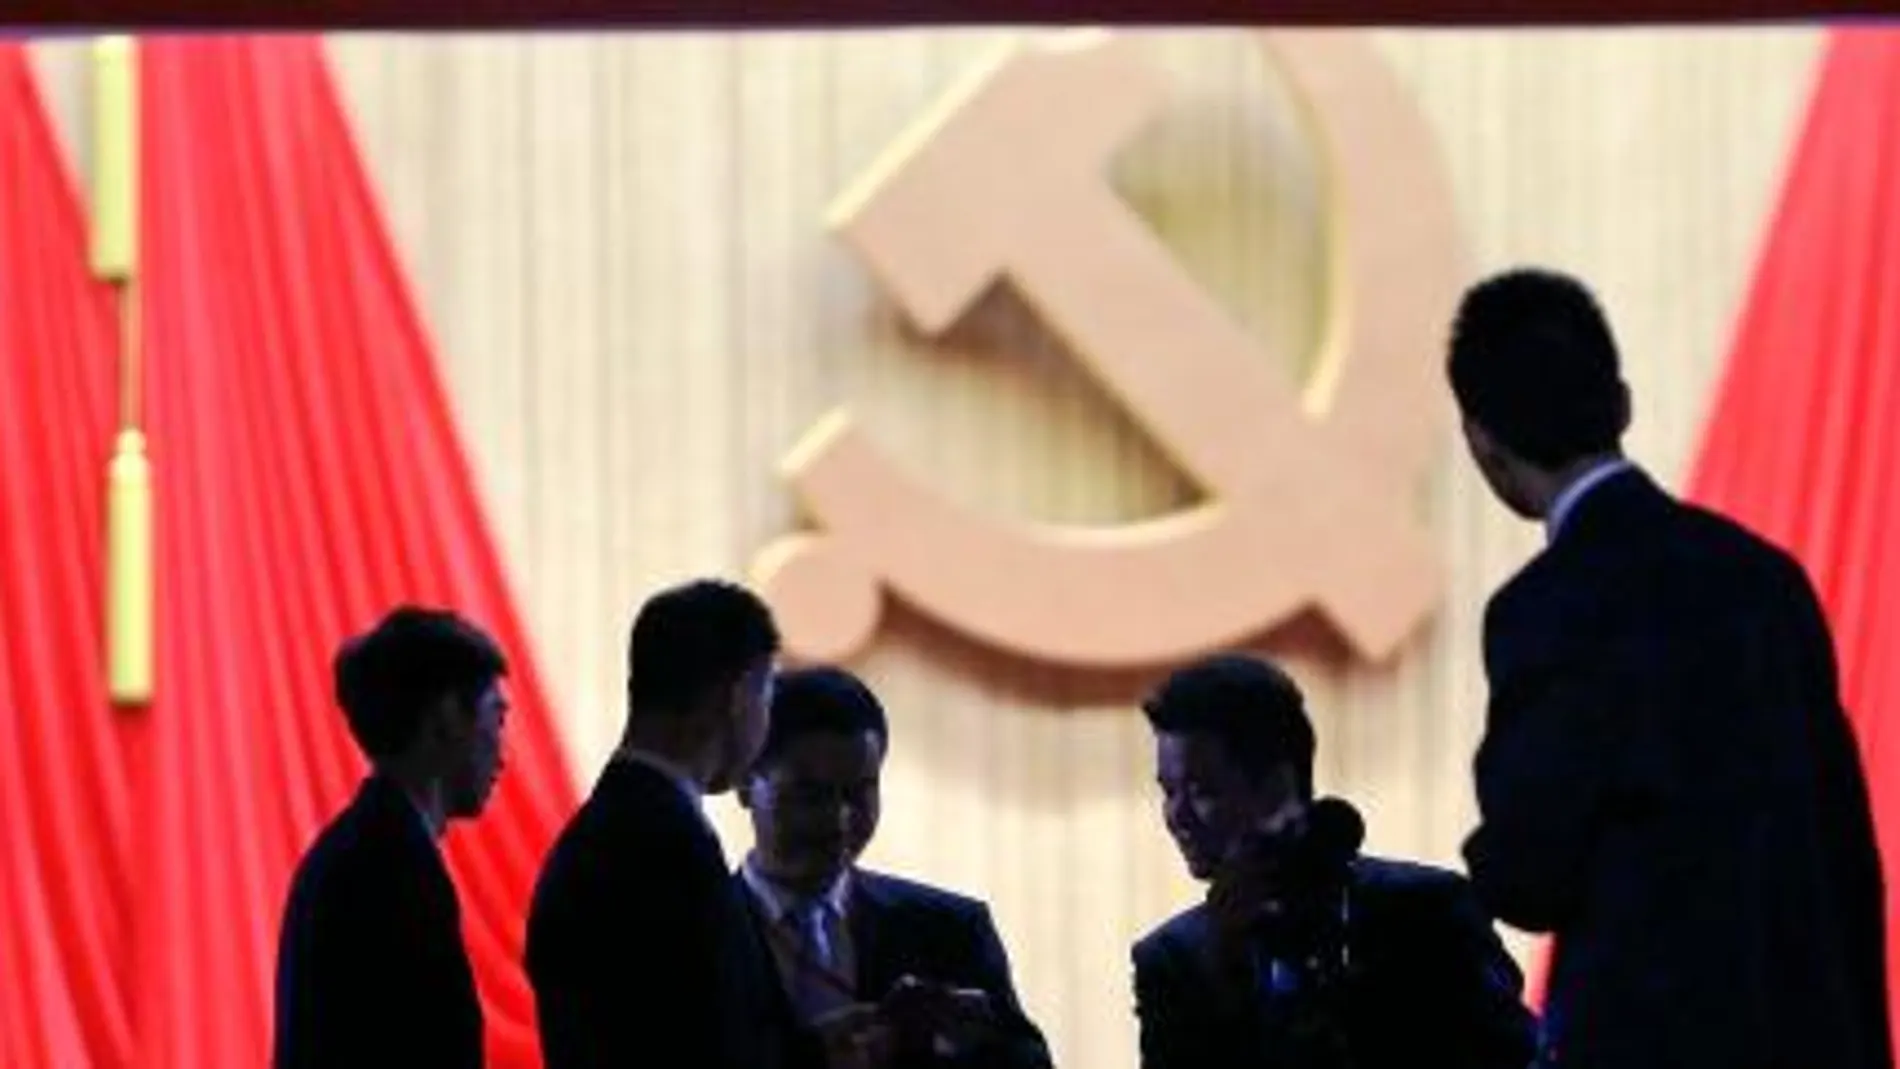 El XVIII Congreso Nacional del Partido Comunista Chino, del que saldrá esta semana la composición de la nueva cúpula del poder, se sucede a puerta cerrada. En la imagen, personal de seguridad